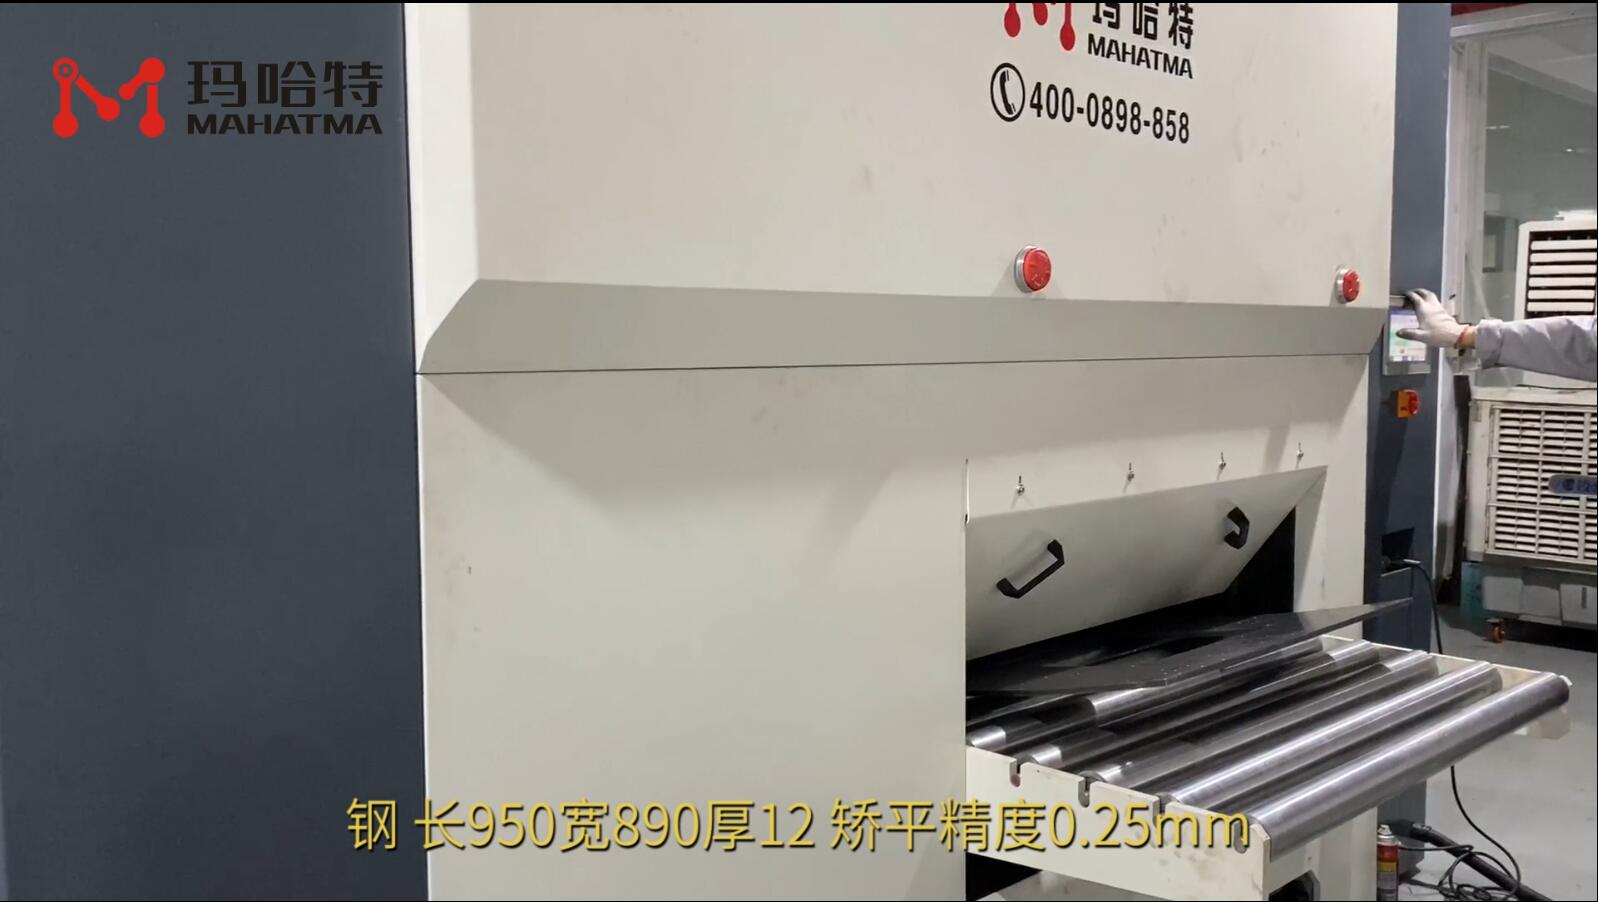  钢 MHT120-1300 长方形 长950宽890厚12 矫平精度0.25mm